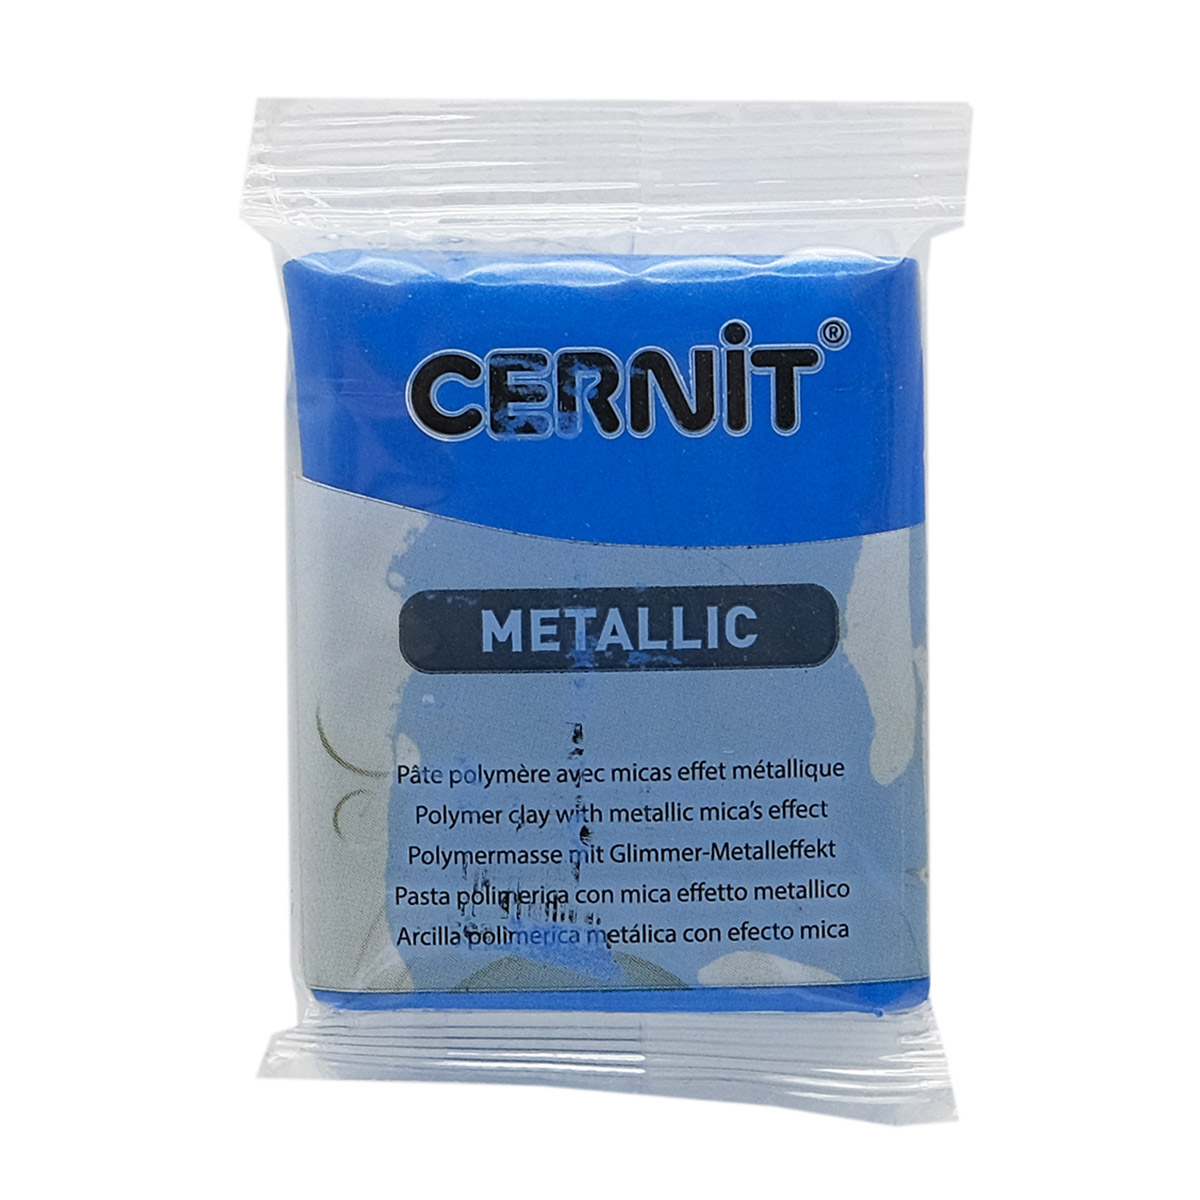 Пластика Cernit Metallic, 56 грамм, цвет 200 синий, арт. CE0870056